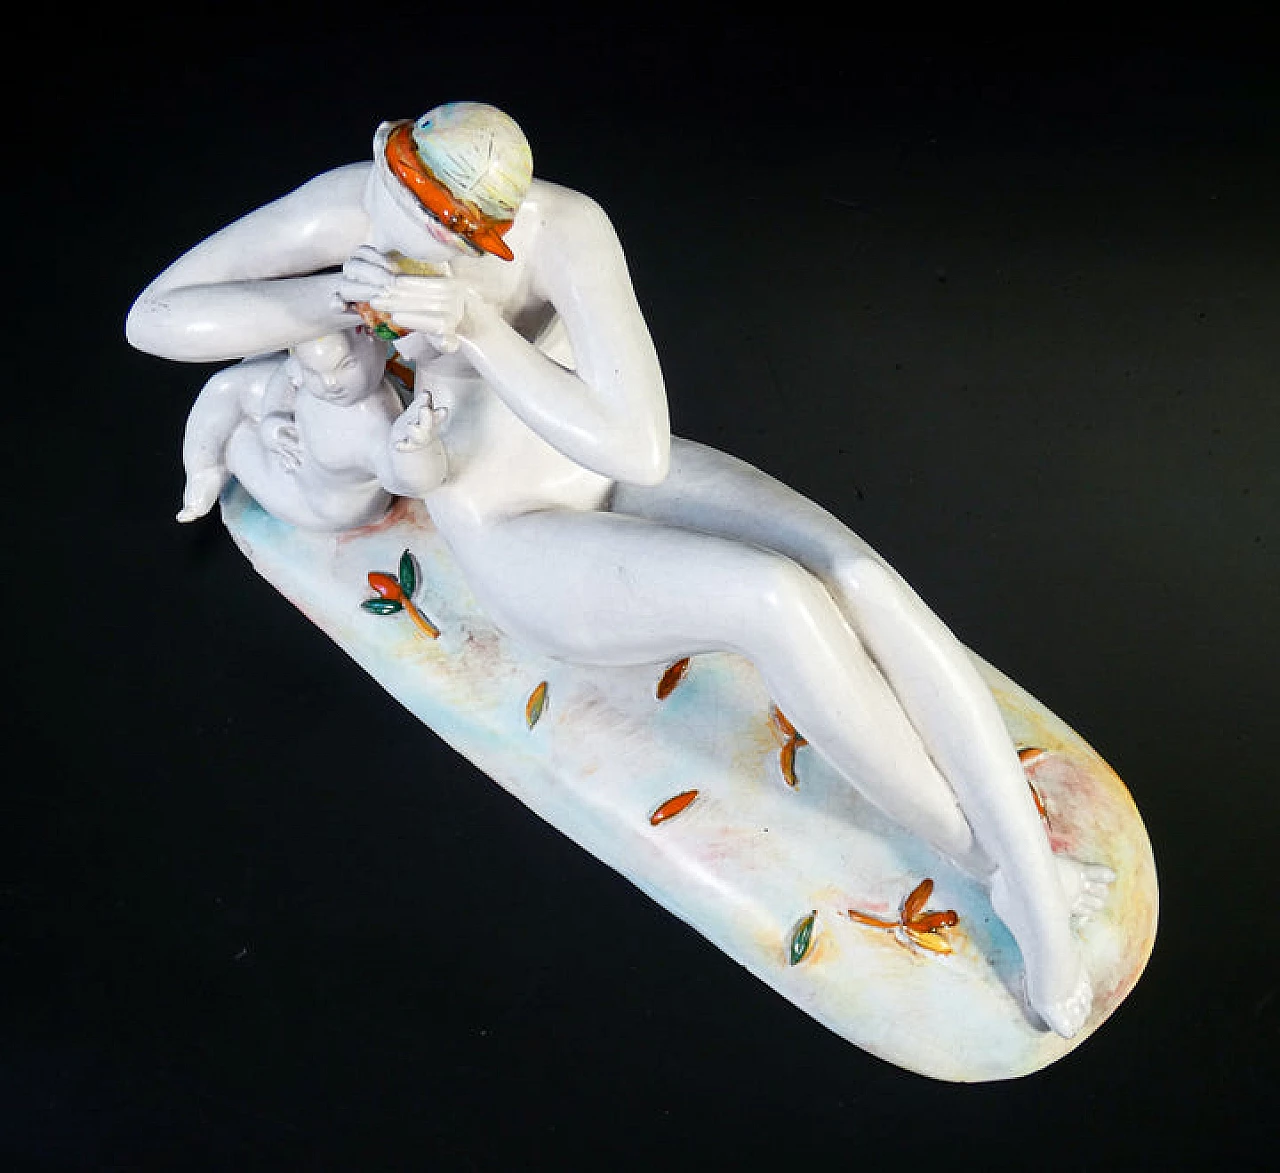 Eugenio Pattarino, female nude with child, ceramic sculpture, 1920s 9